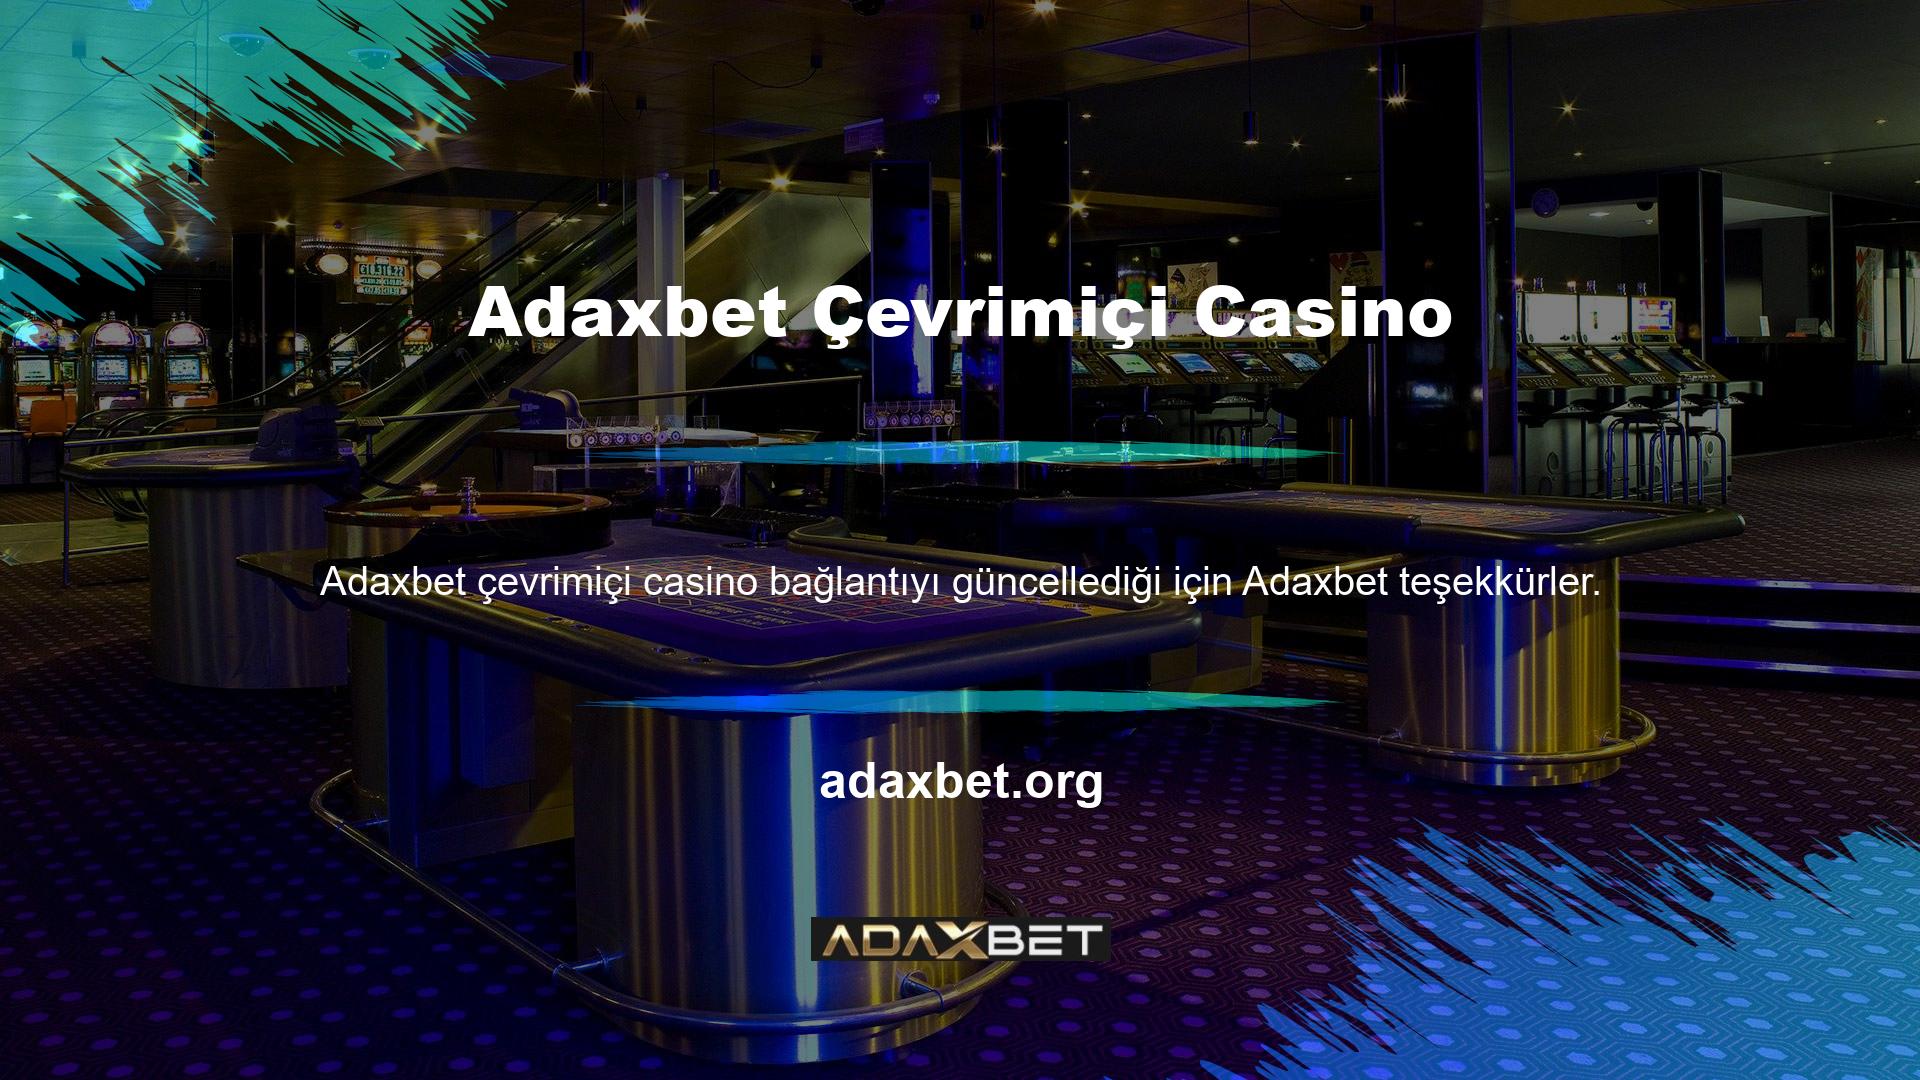 Çevrimiçi casinoların sonuçlara ihtiyacı var